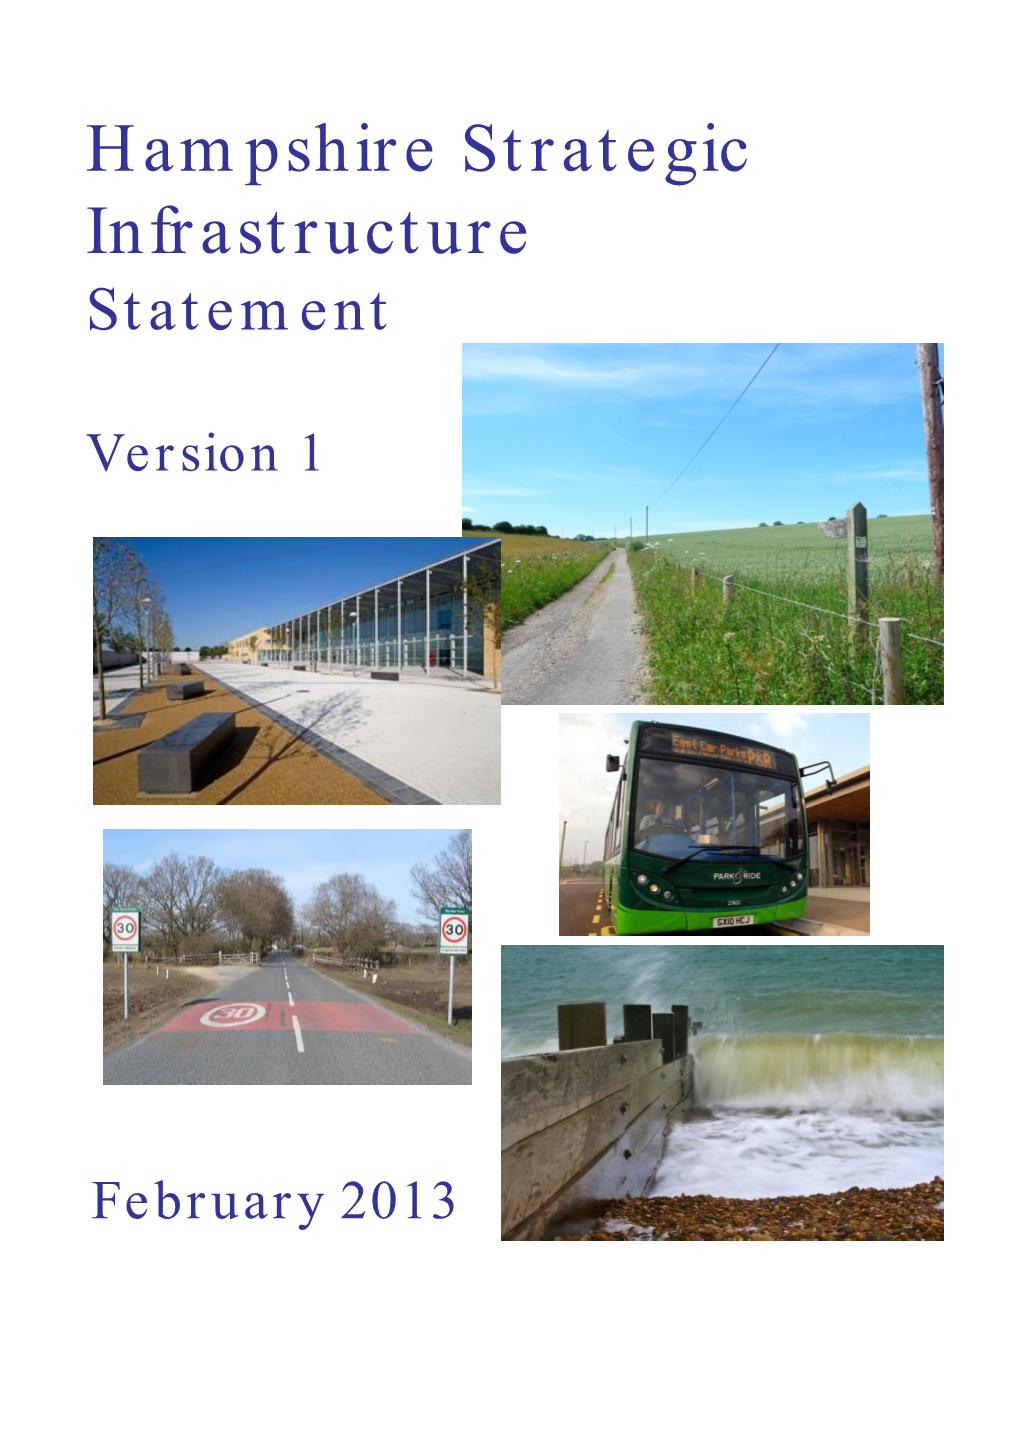 Hampshire Strategic Infrastructure Statement